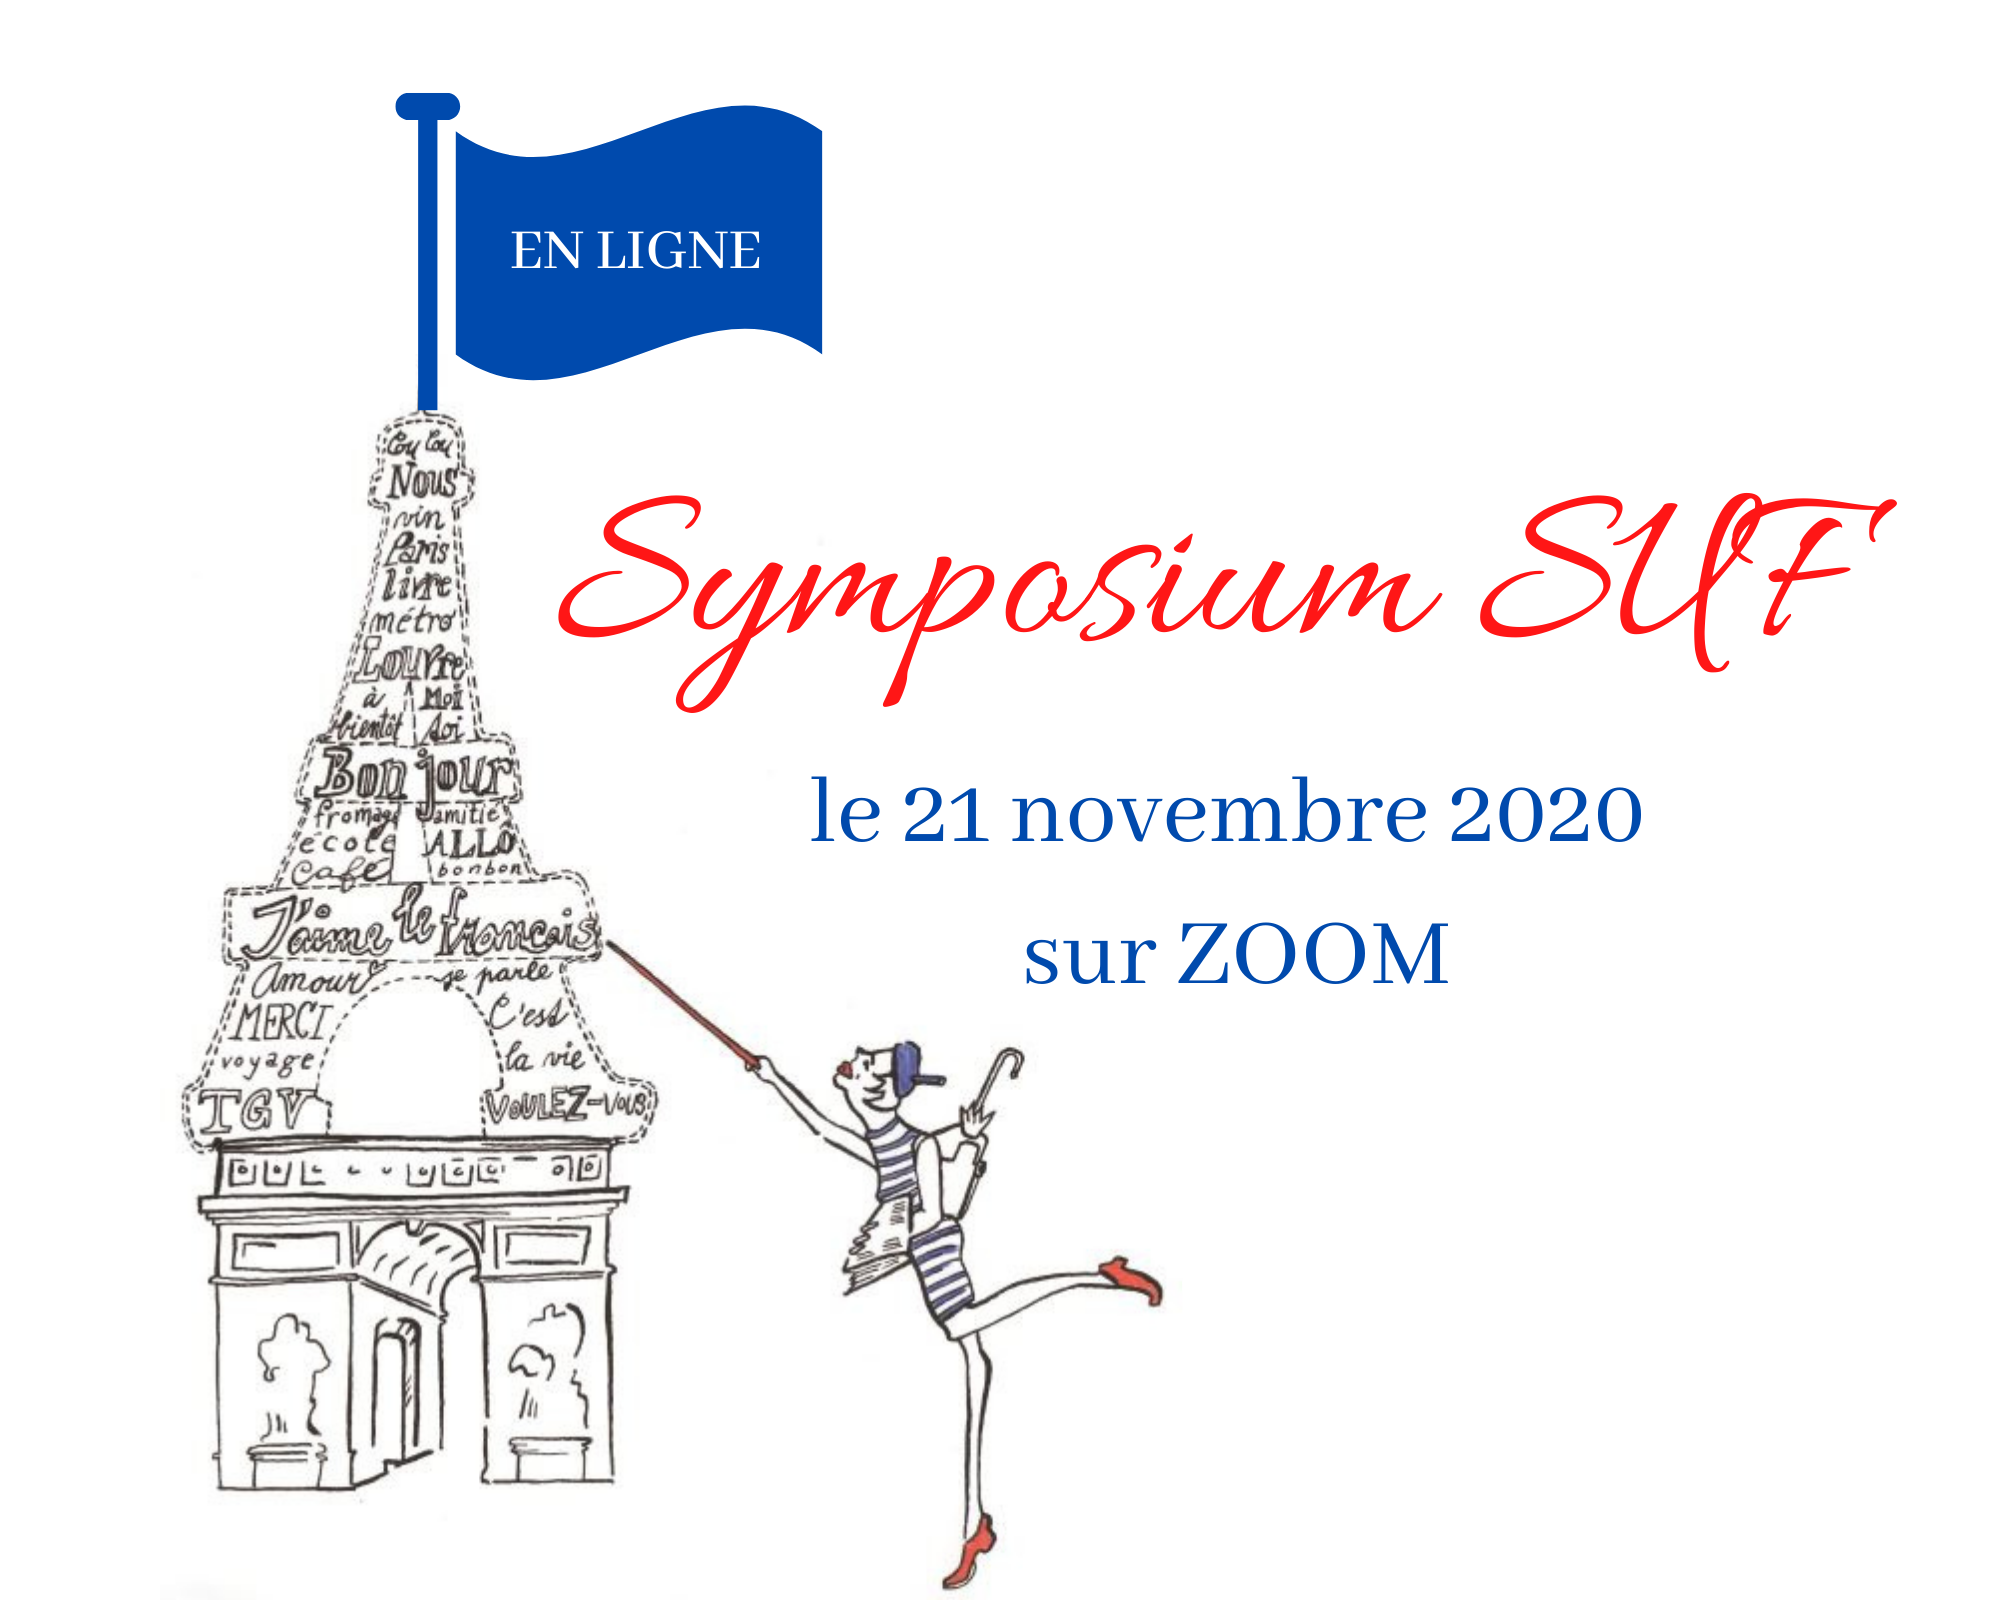 IMPORTANT : Symposium SUF 2020 en ligne !